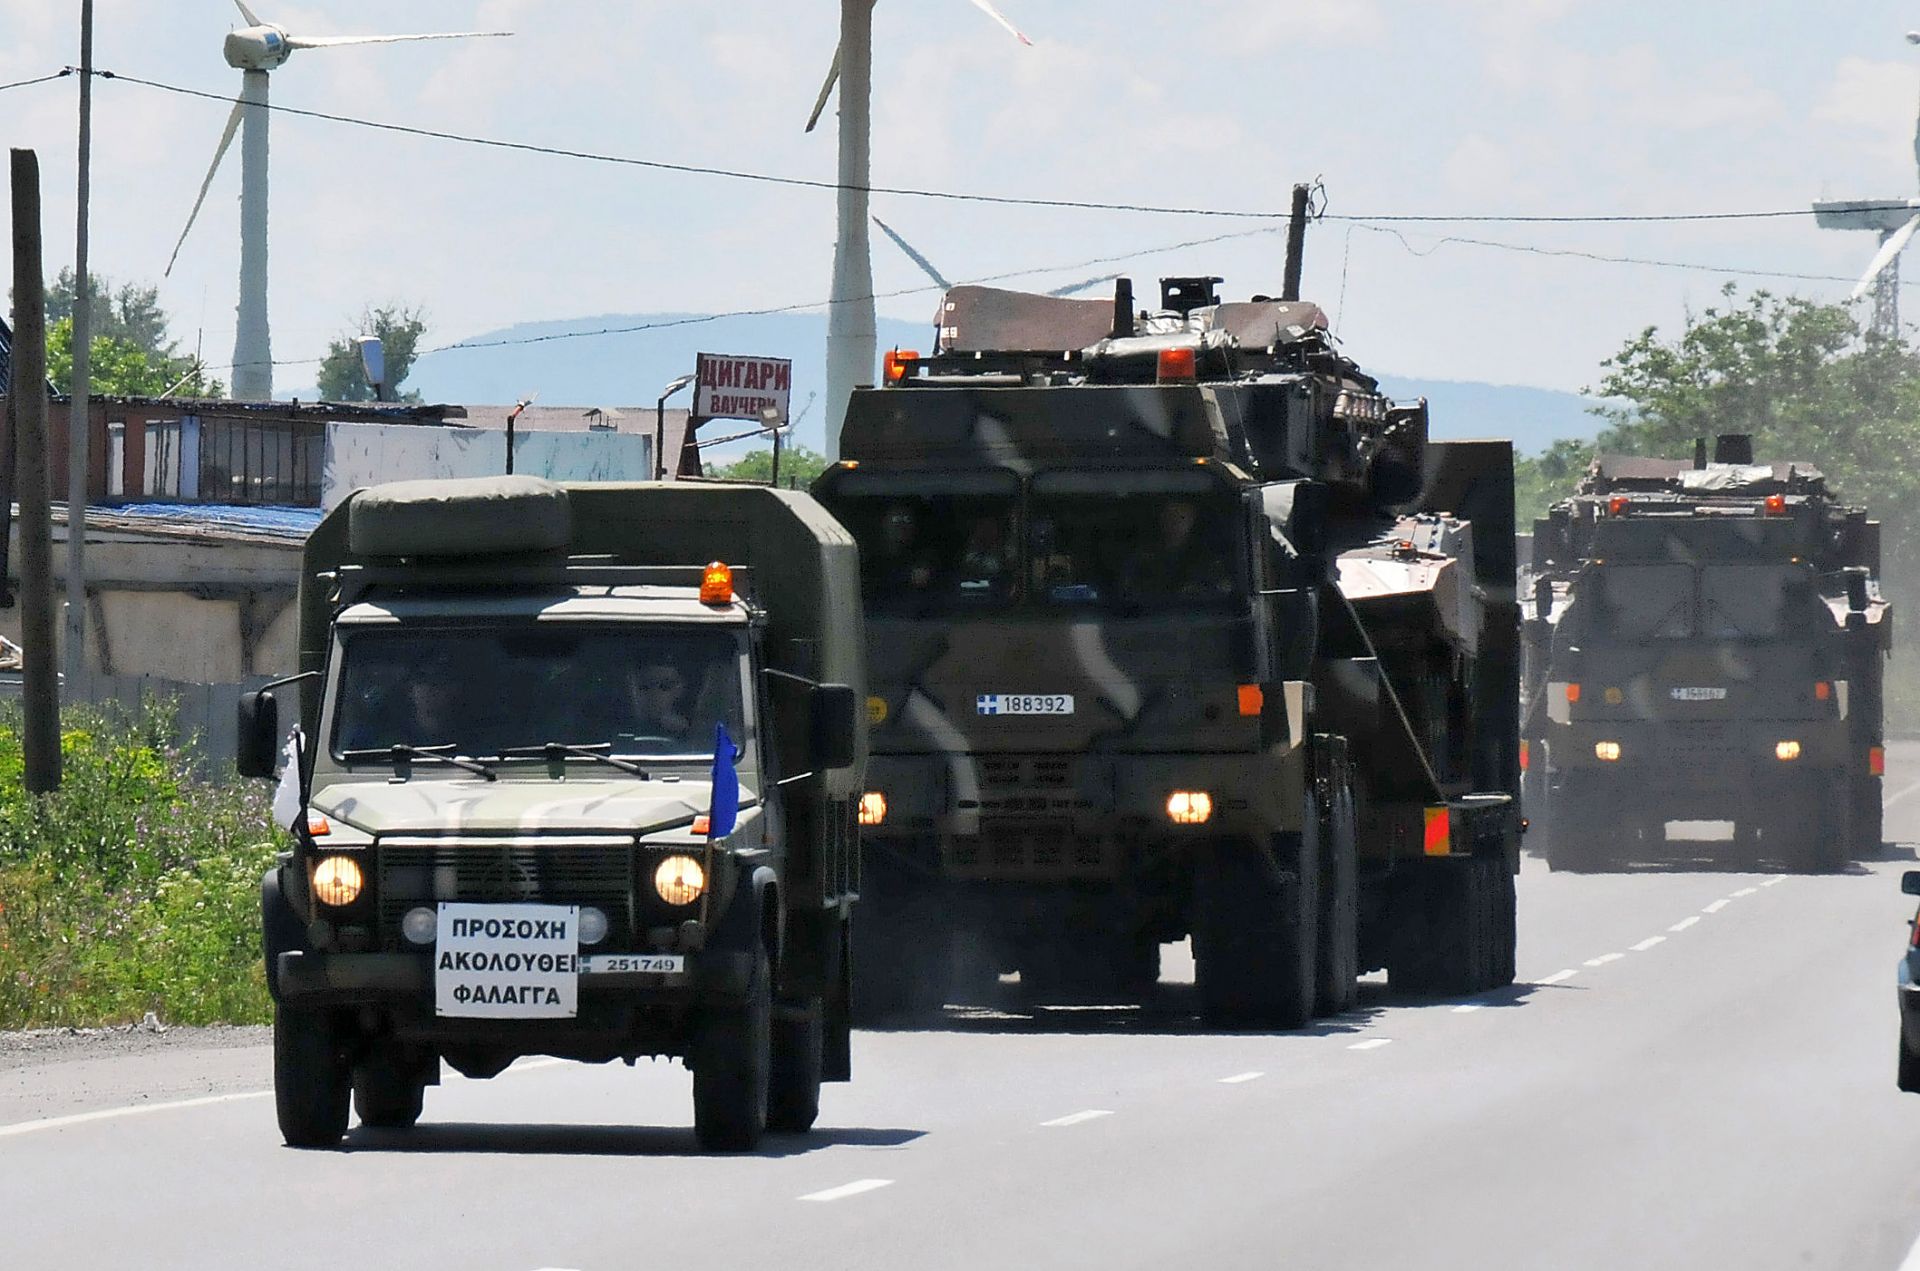  Танков взвод от Гърция пристигна на учебен полигон „Ново село” в близост до Сливен